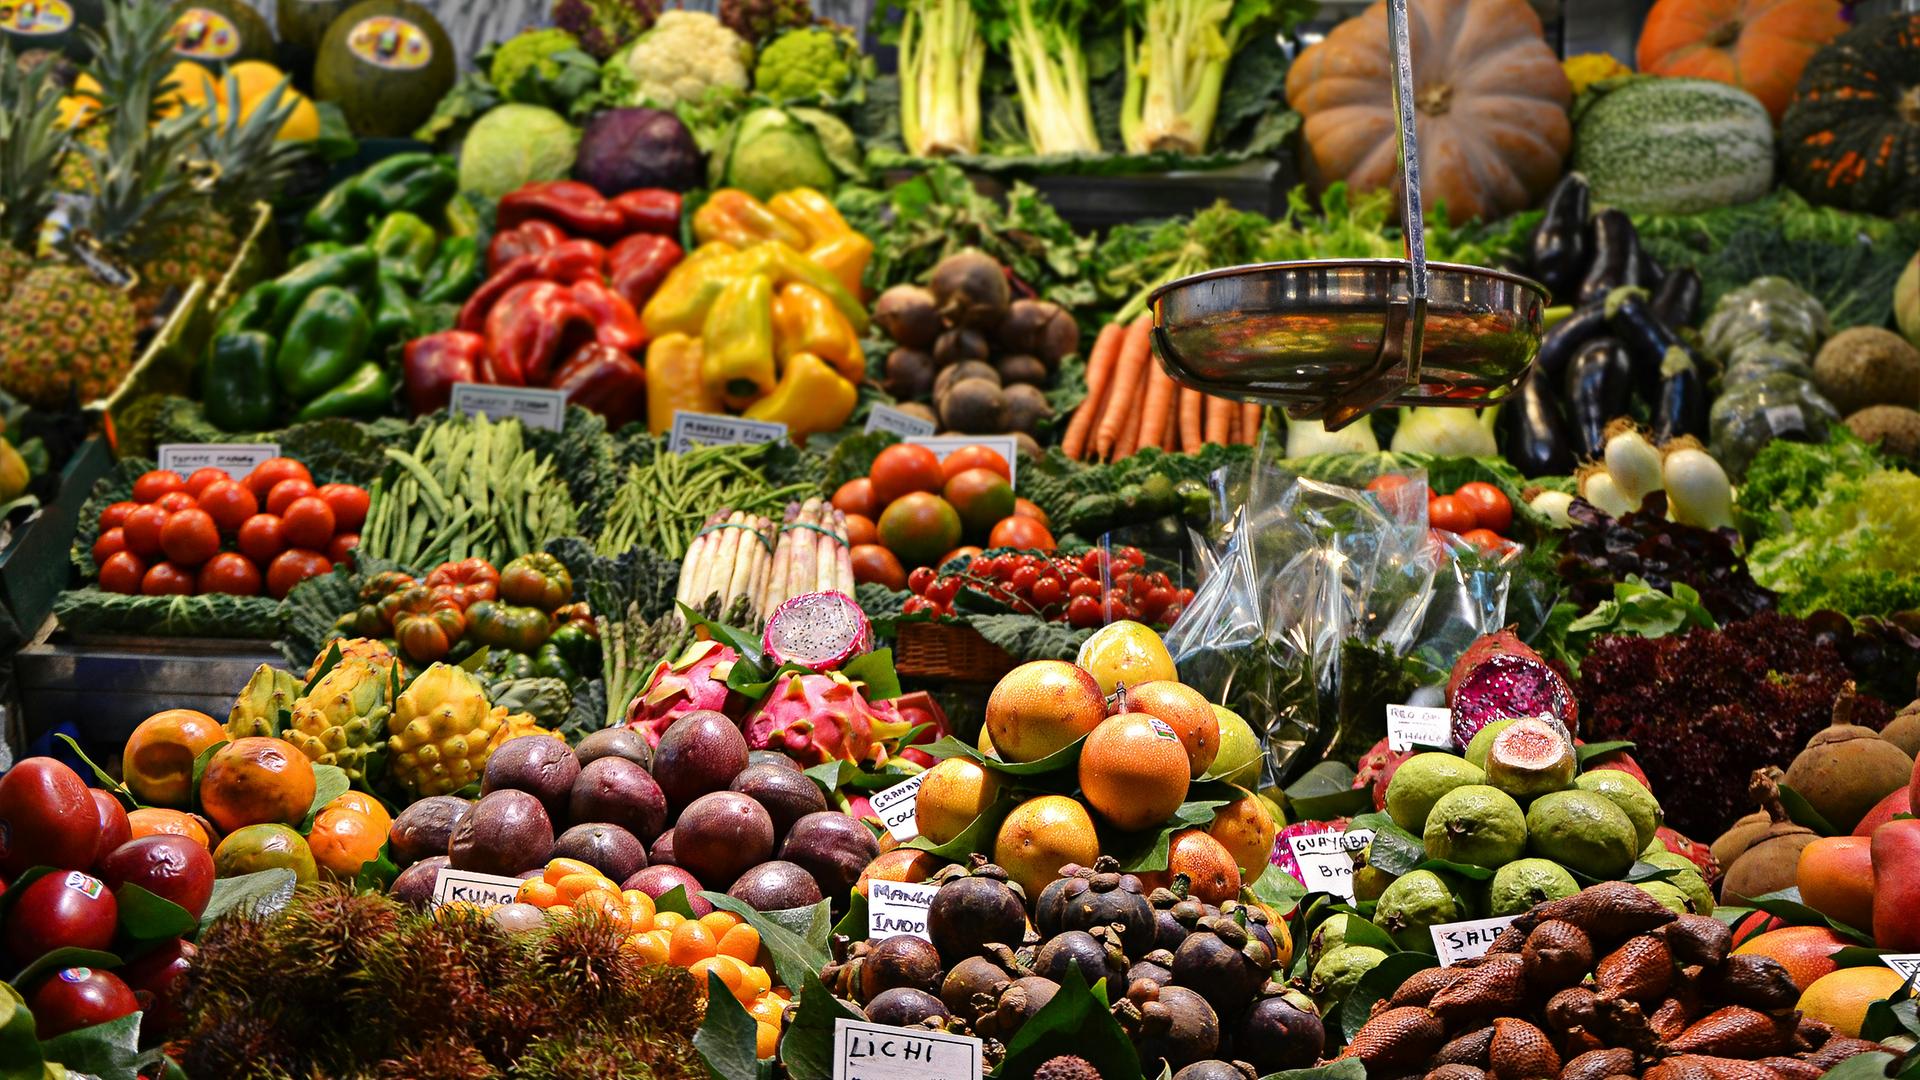 Eine gefüllte Obst- und Gemüseabteilung schillert in bunten Farben.